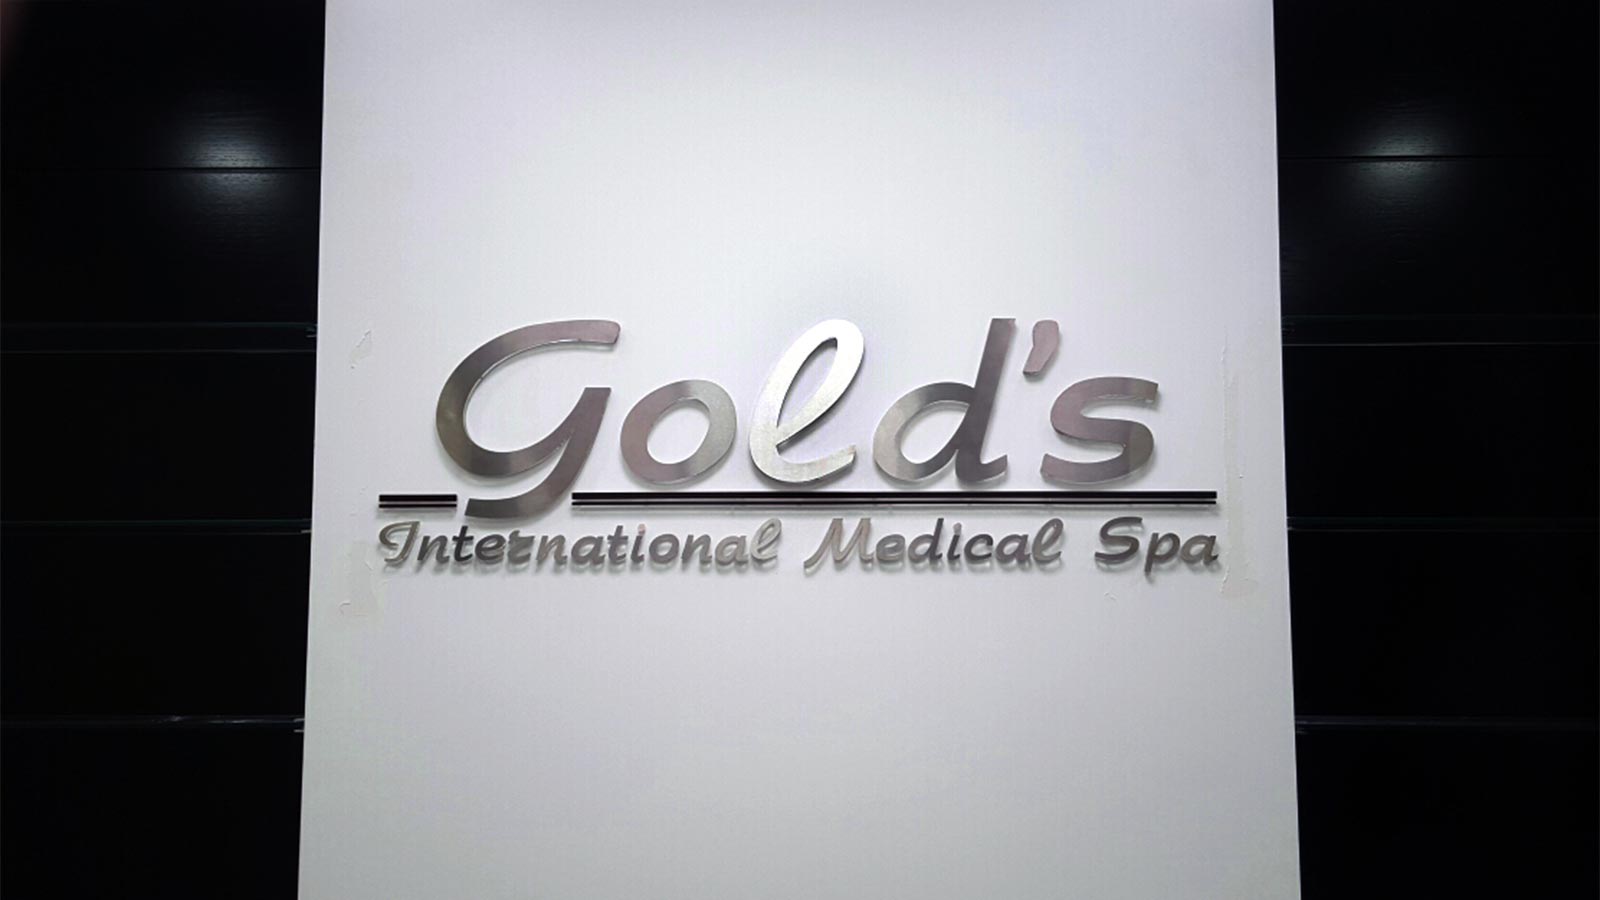 golds international medical spa 3d sign